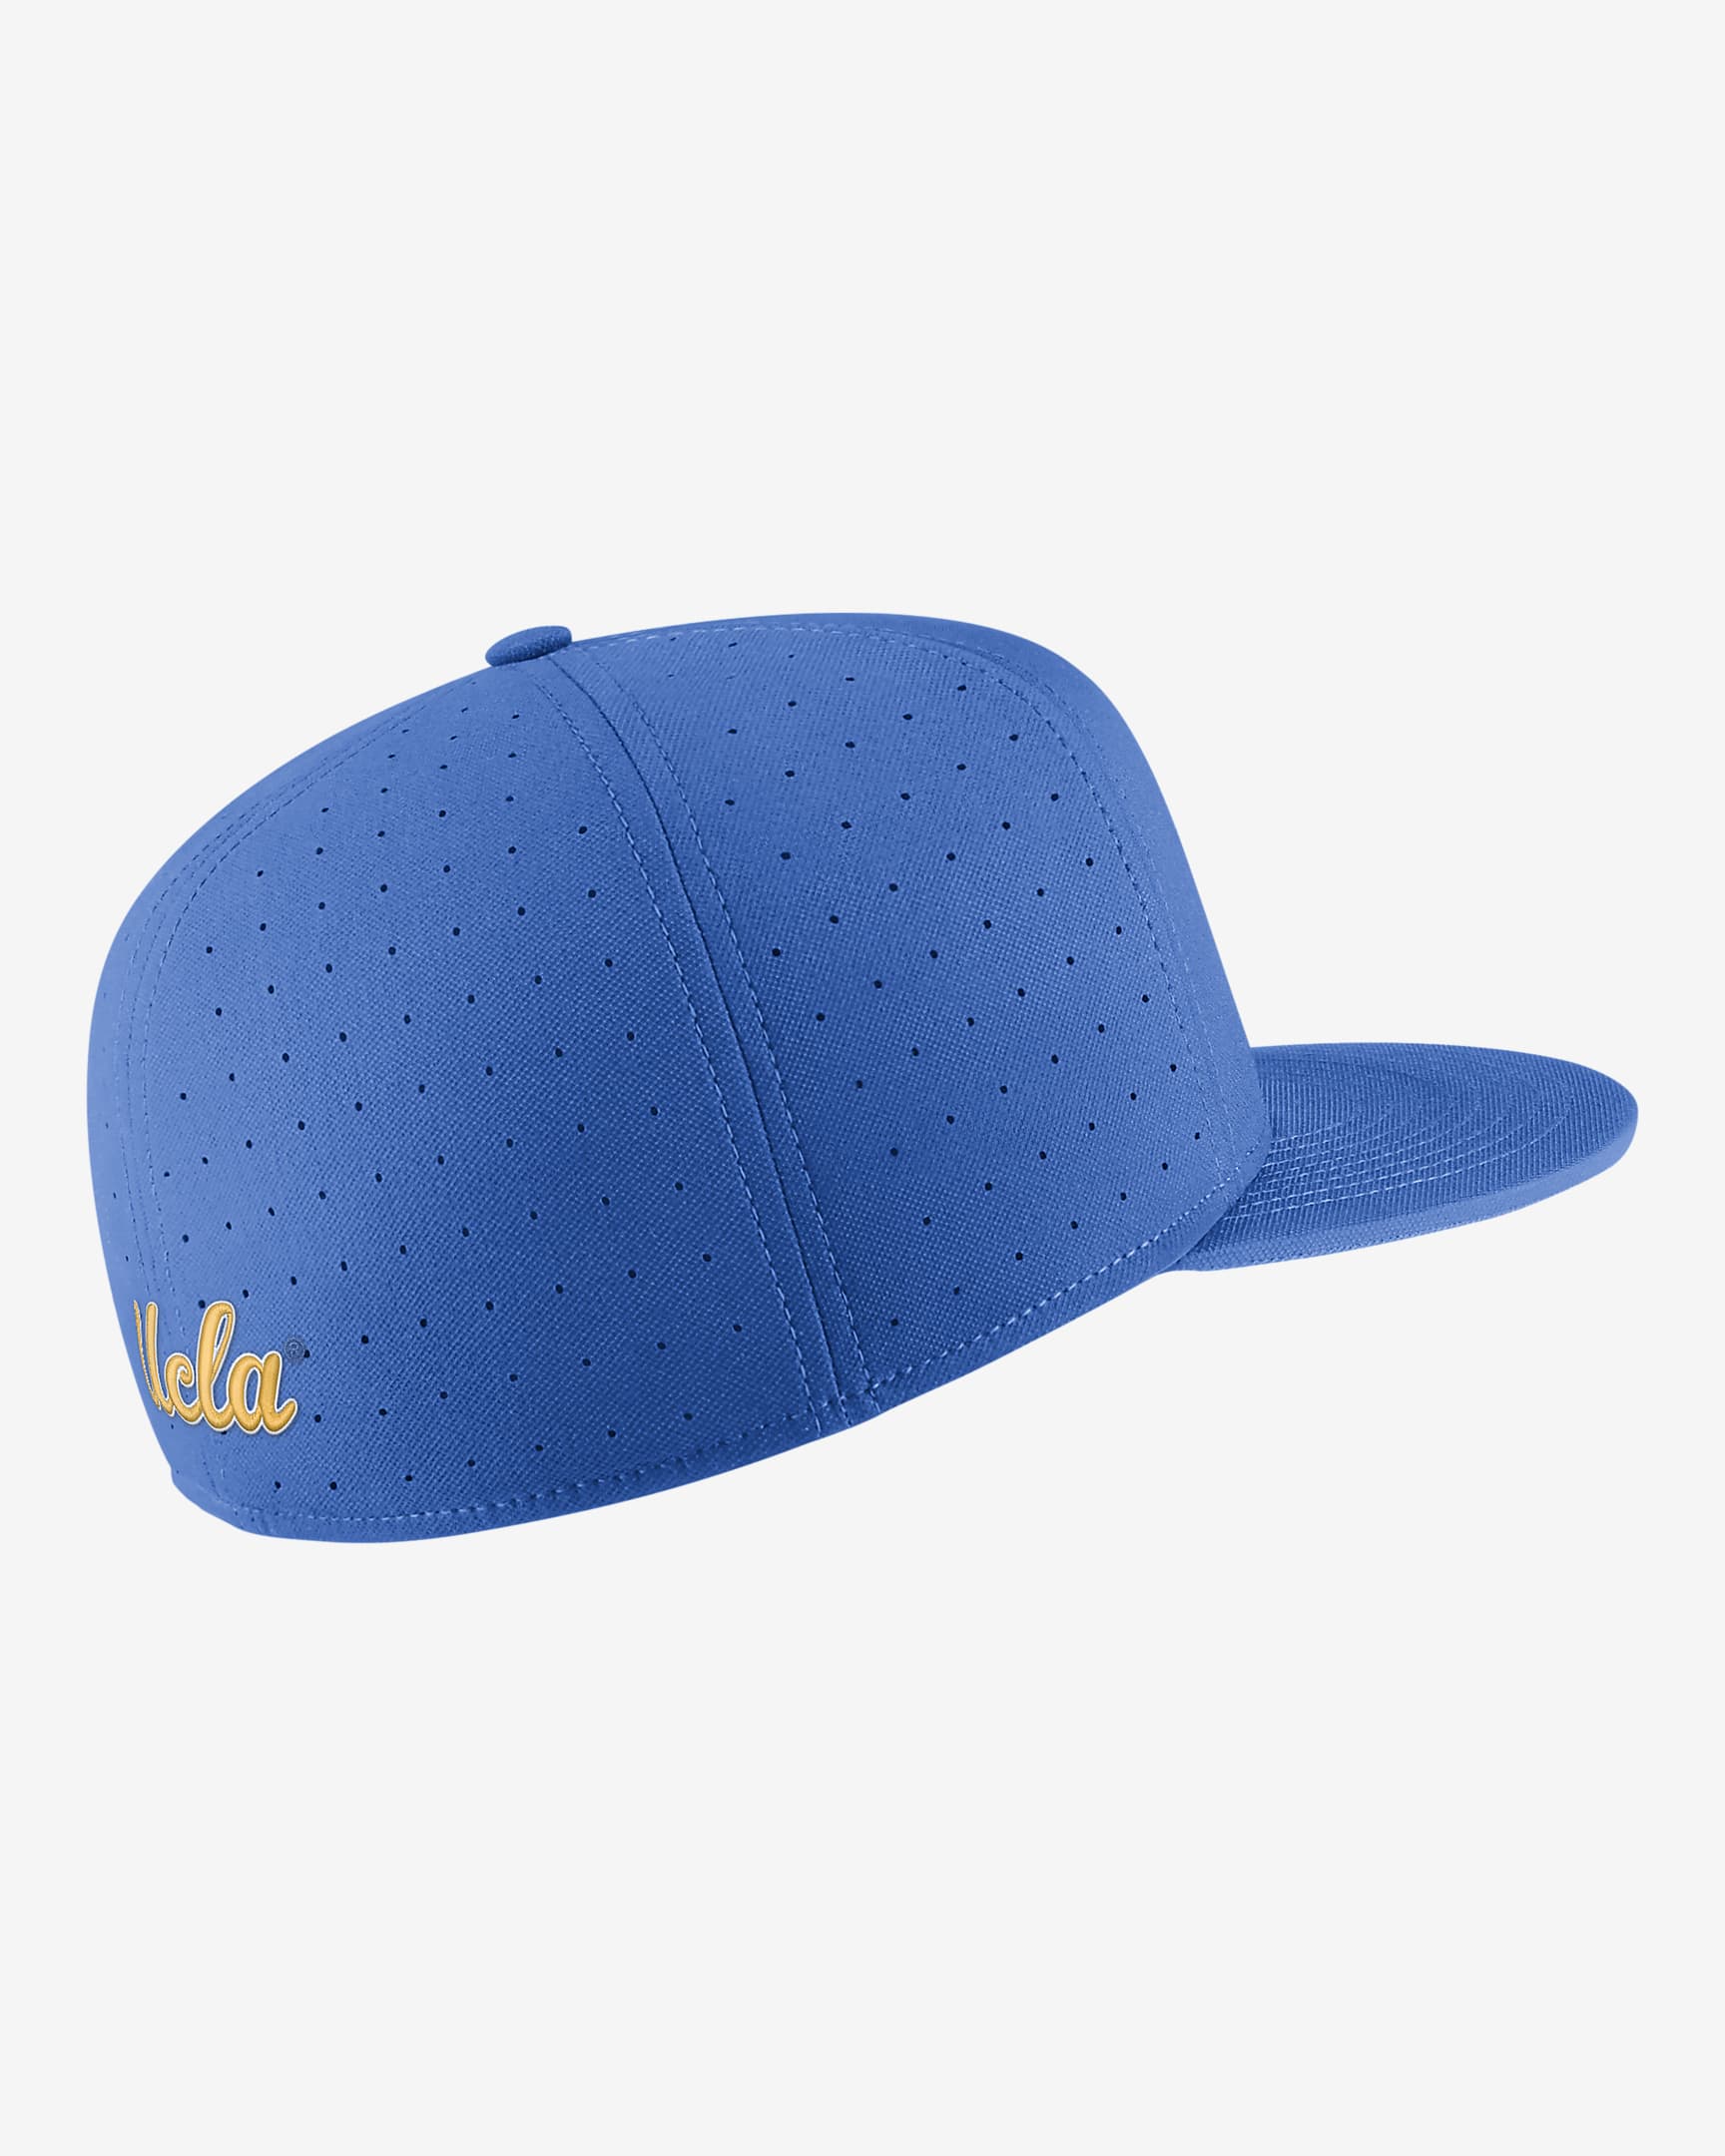 UCLA Nike College Fitted Baseball Hat. Nike.com